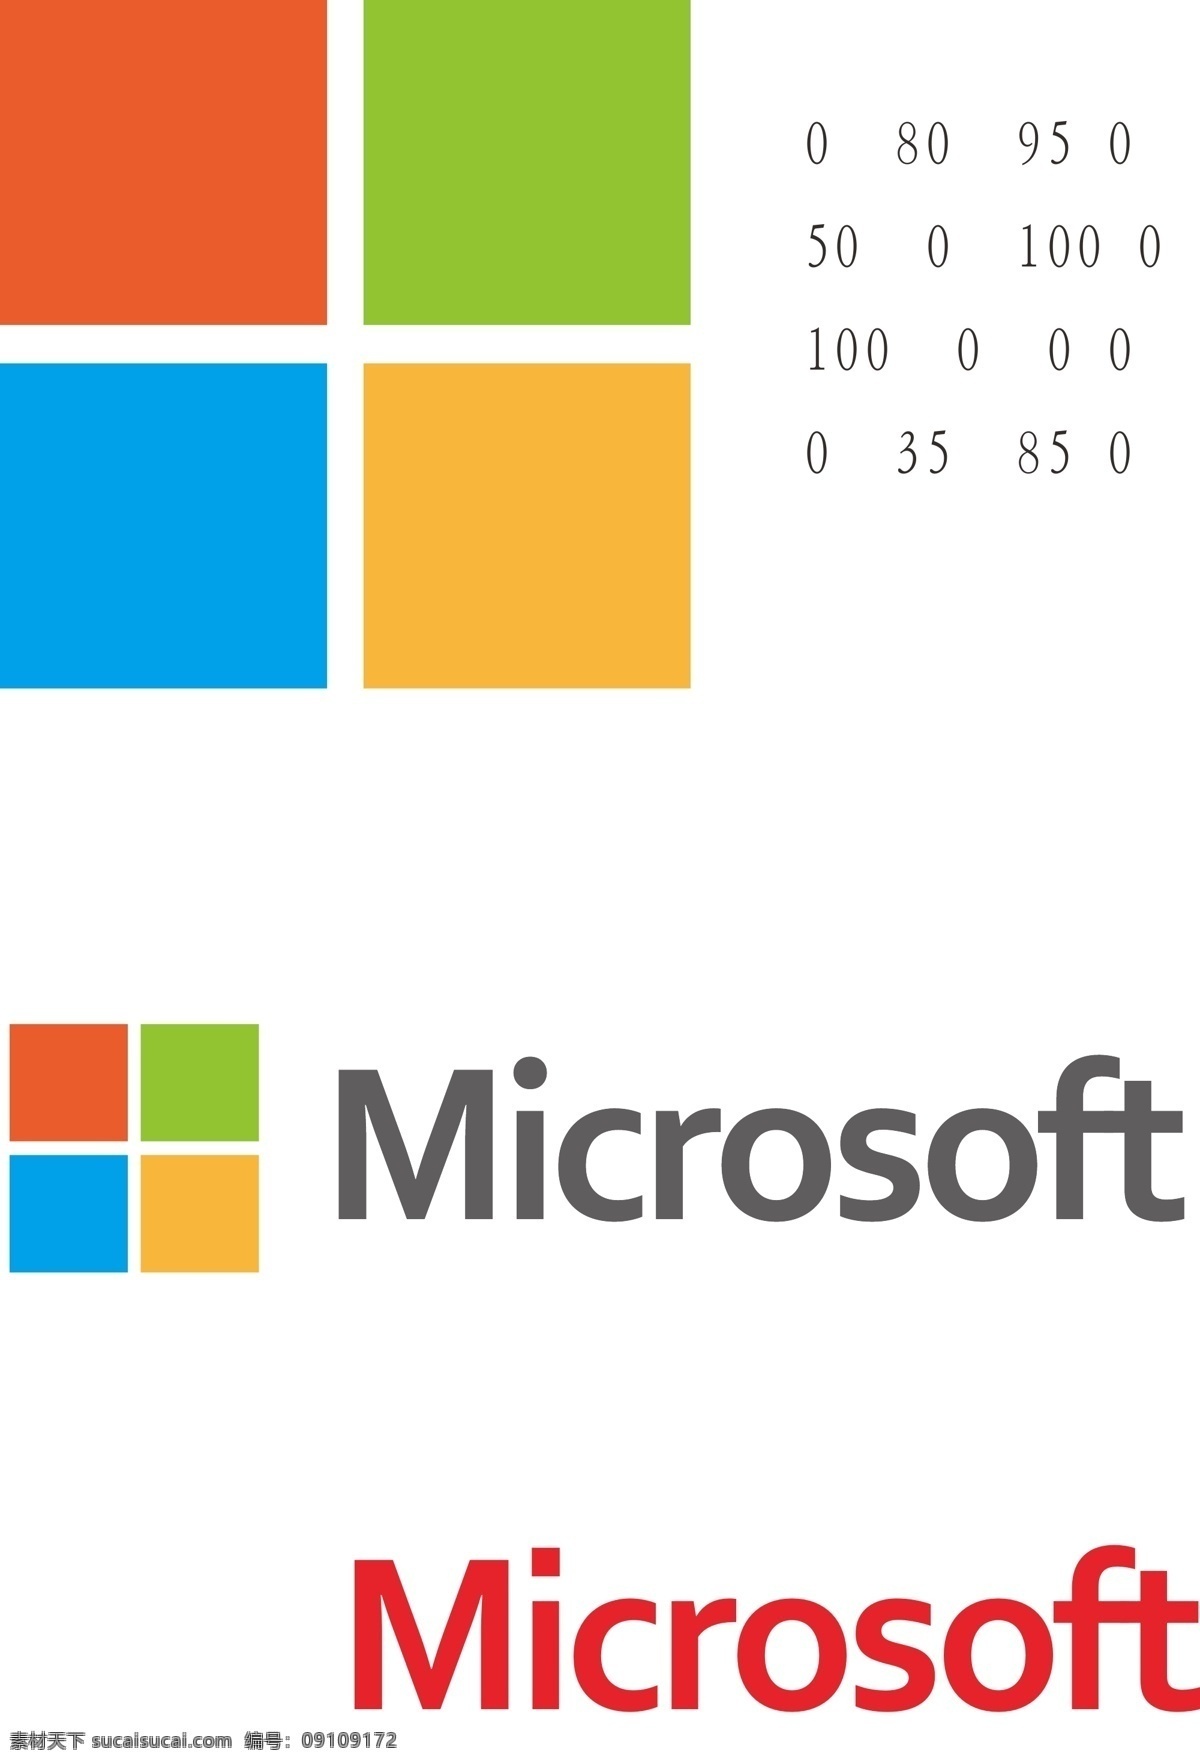 微软新标识 微软 标志 最新 企业 logo 标识标志图标 矢量